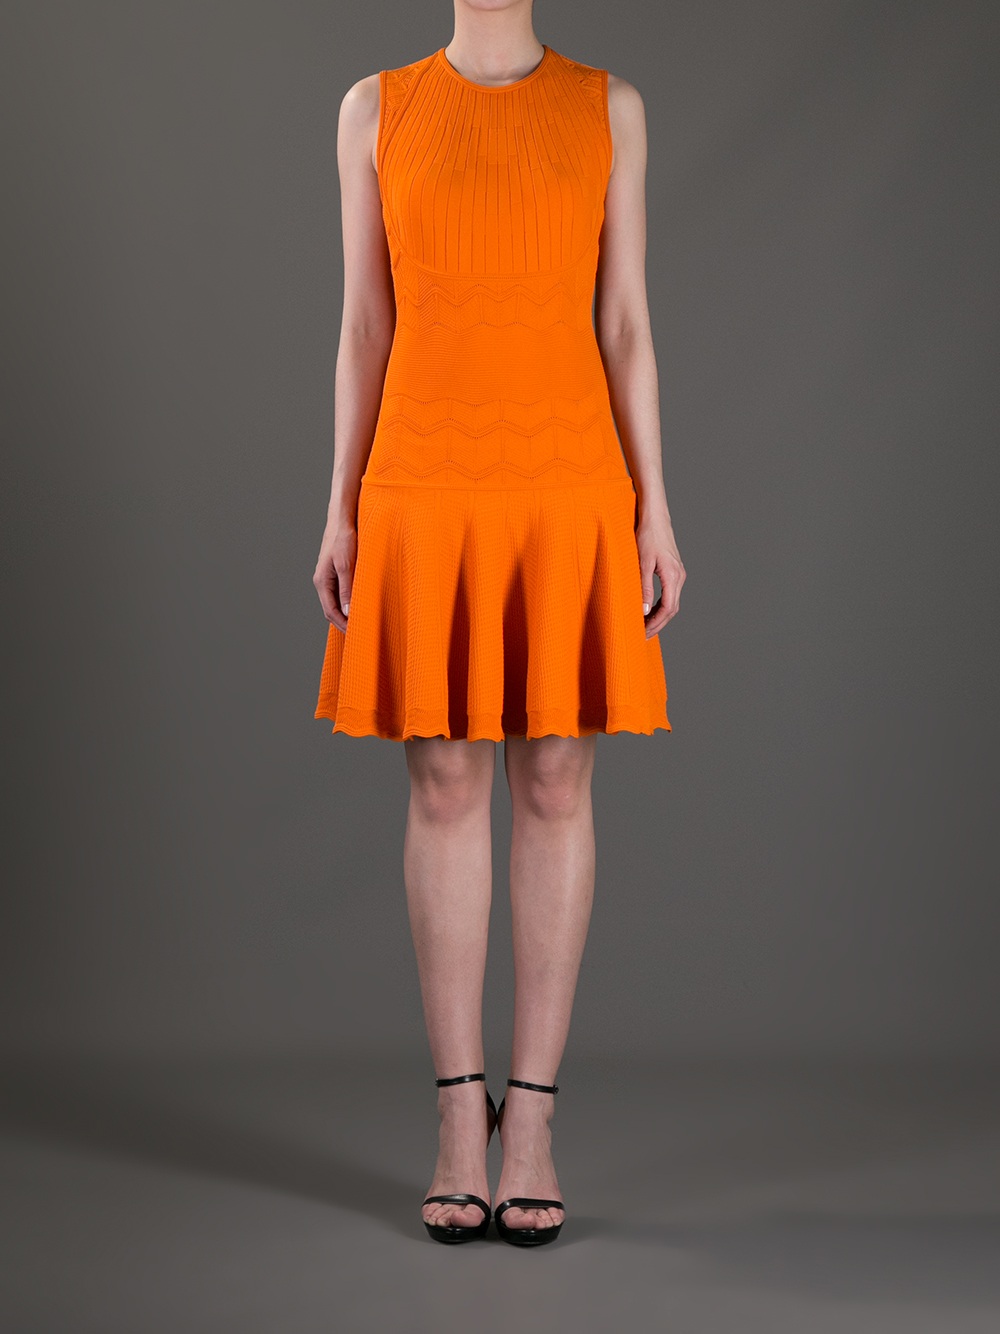 Alexander mcqueen Wavy Knit Dress in Orange | Lyst